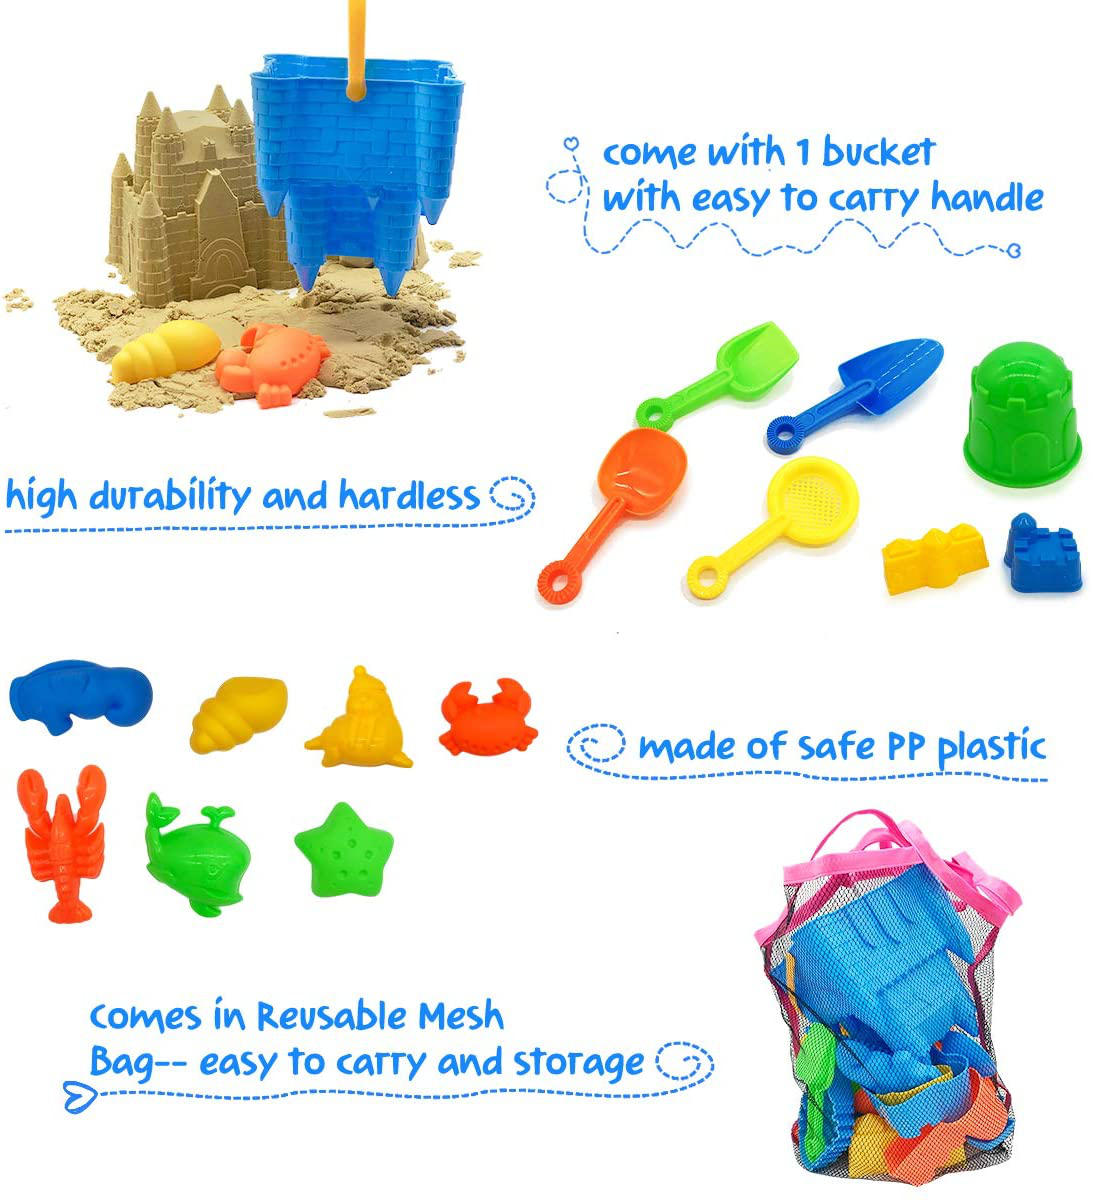 Kids Beach Sand Toys Set, 27pcs Beach Toys Castle Molds Sand Molds, Beach Bucket, Beach Shovel Tool Kit, Sandbox Toys for Toddlers, for Toddlers Kids Outdoor Indoor Play Gift 1 Bonus Mesh Bag Include